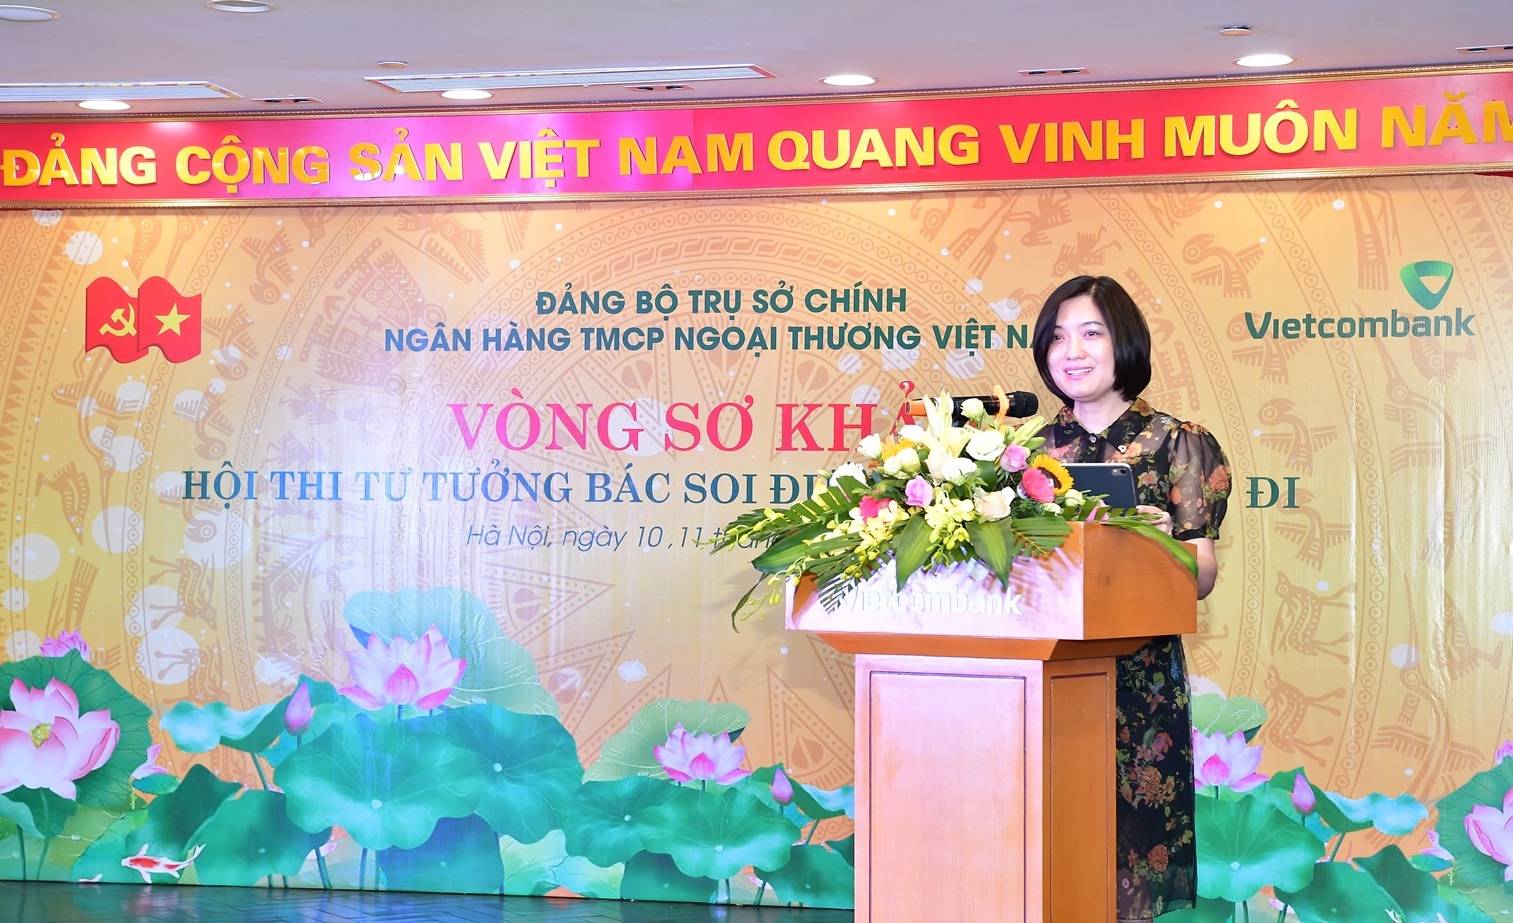 Đảng ủy Trụ sở chính Vietcombank tổ chức Hội thi “Tư tưởng Bác soi đường chúng con đi”